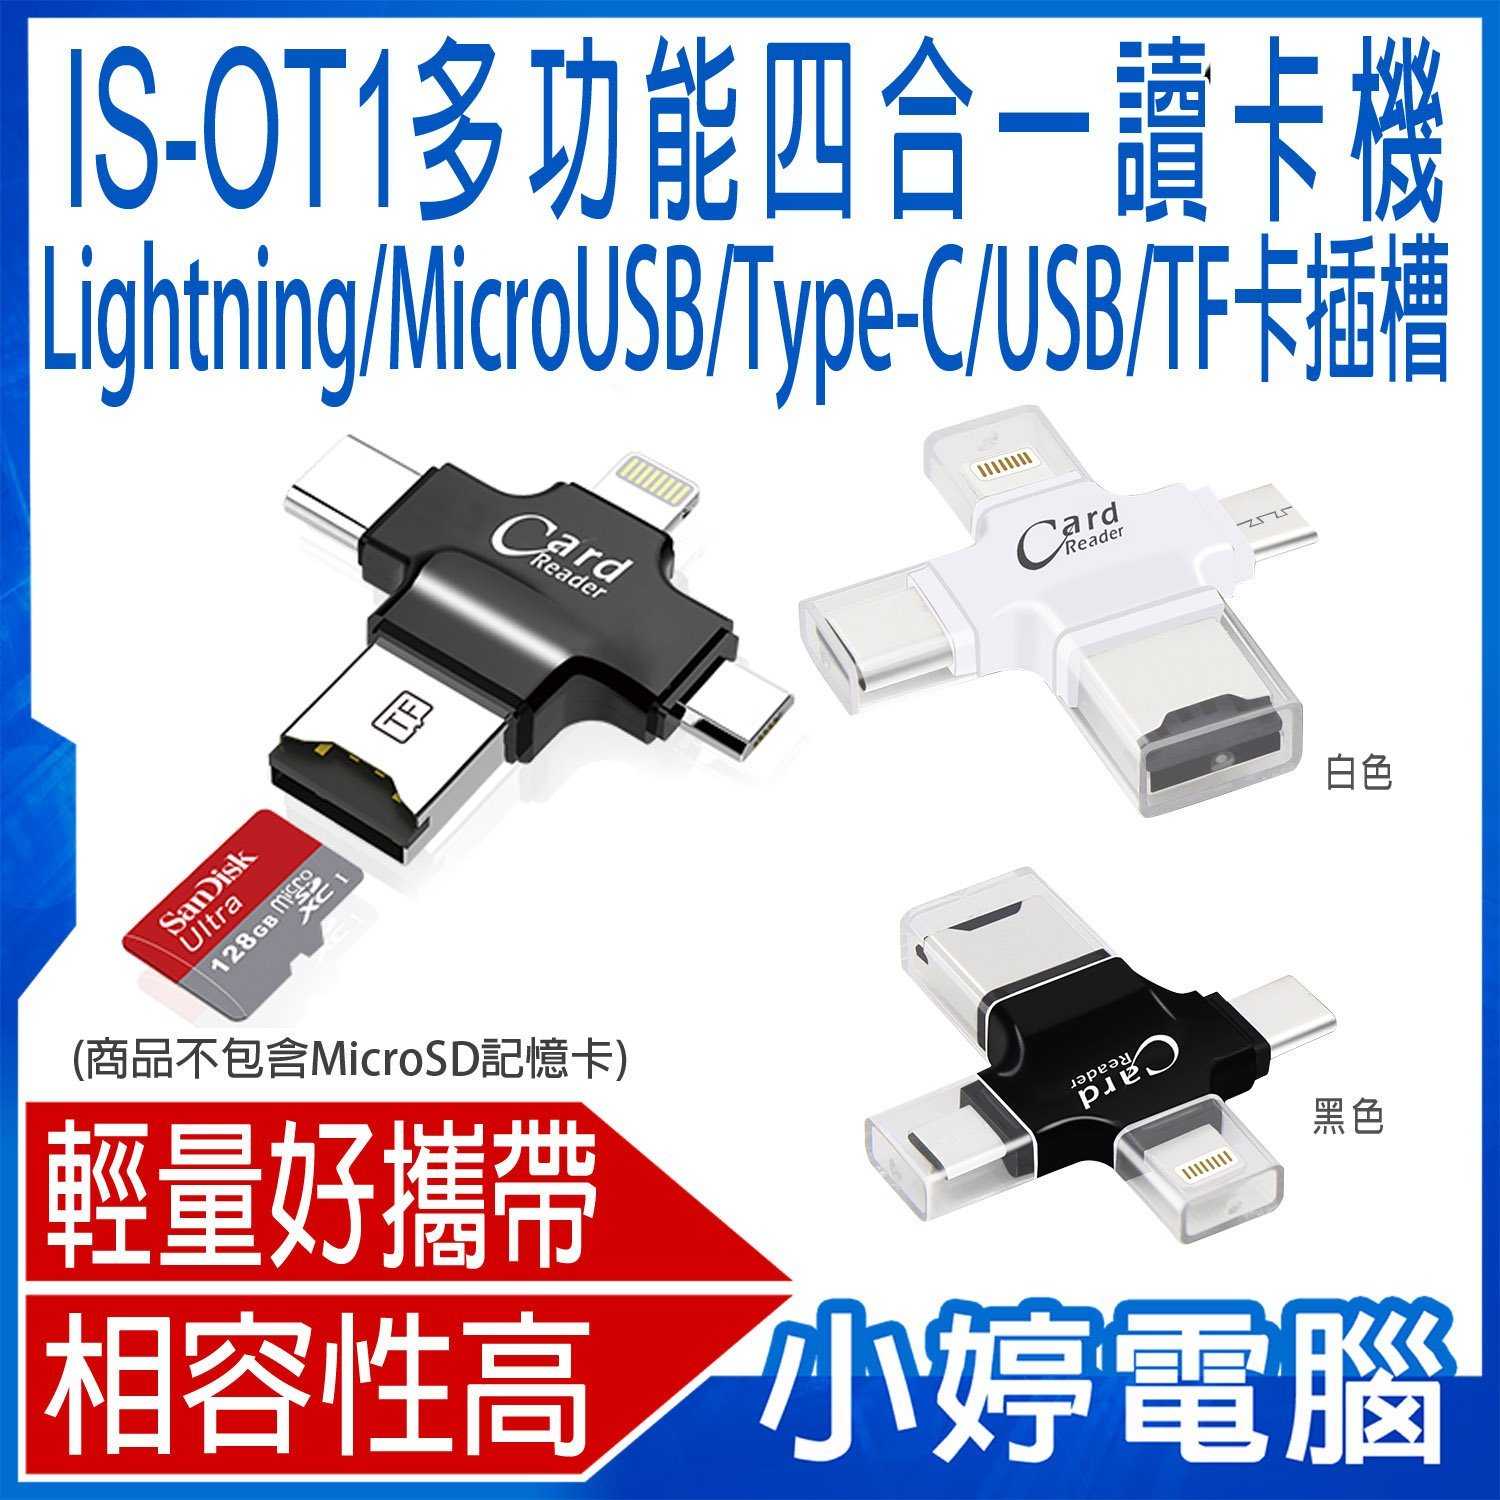 【小婷電腦】IS-OT1多功能四合一讀卡機 MicroUSB/Lightning/Type-C/USB